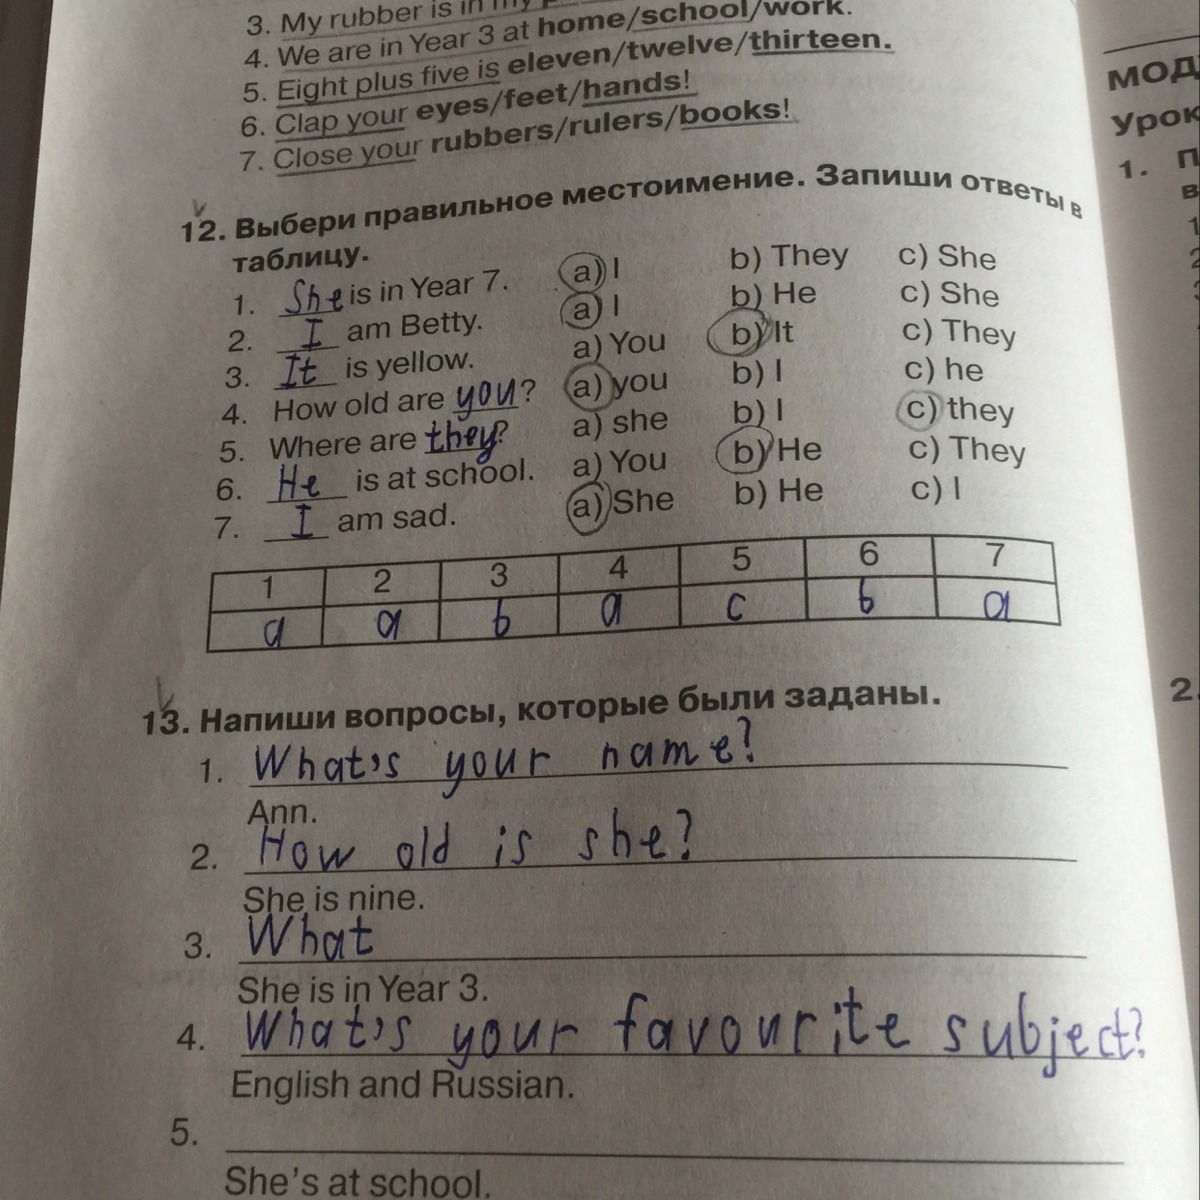 Английский язык 3 класс выбери правильный ответ. Выбери правильное местоимение. Выбери правильное местоимение запиши ответы в таблицу. Напиши вопросы которые были заданы. Выбери правильное местоимение запиши ответы в таблицу 3.